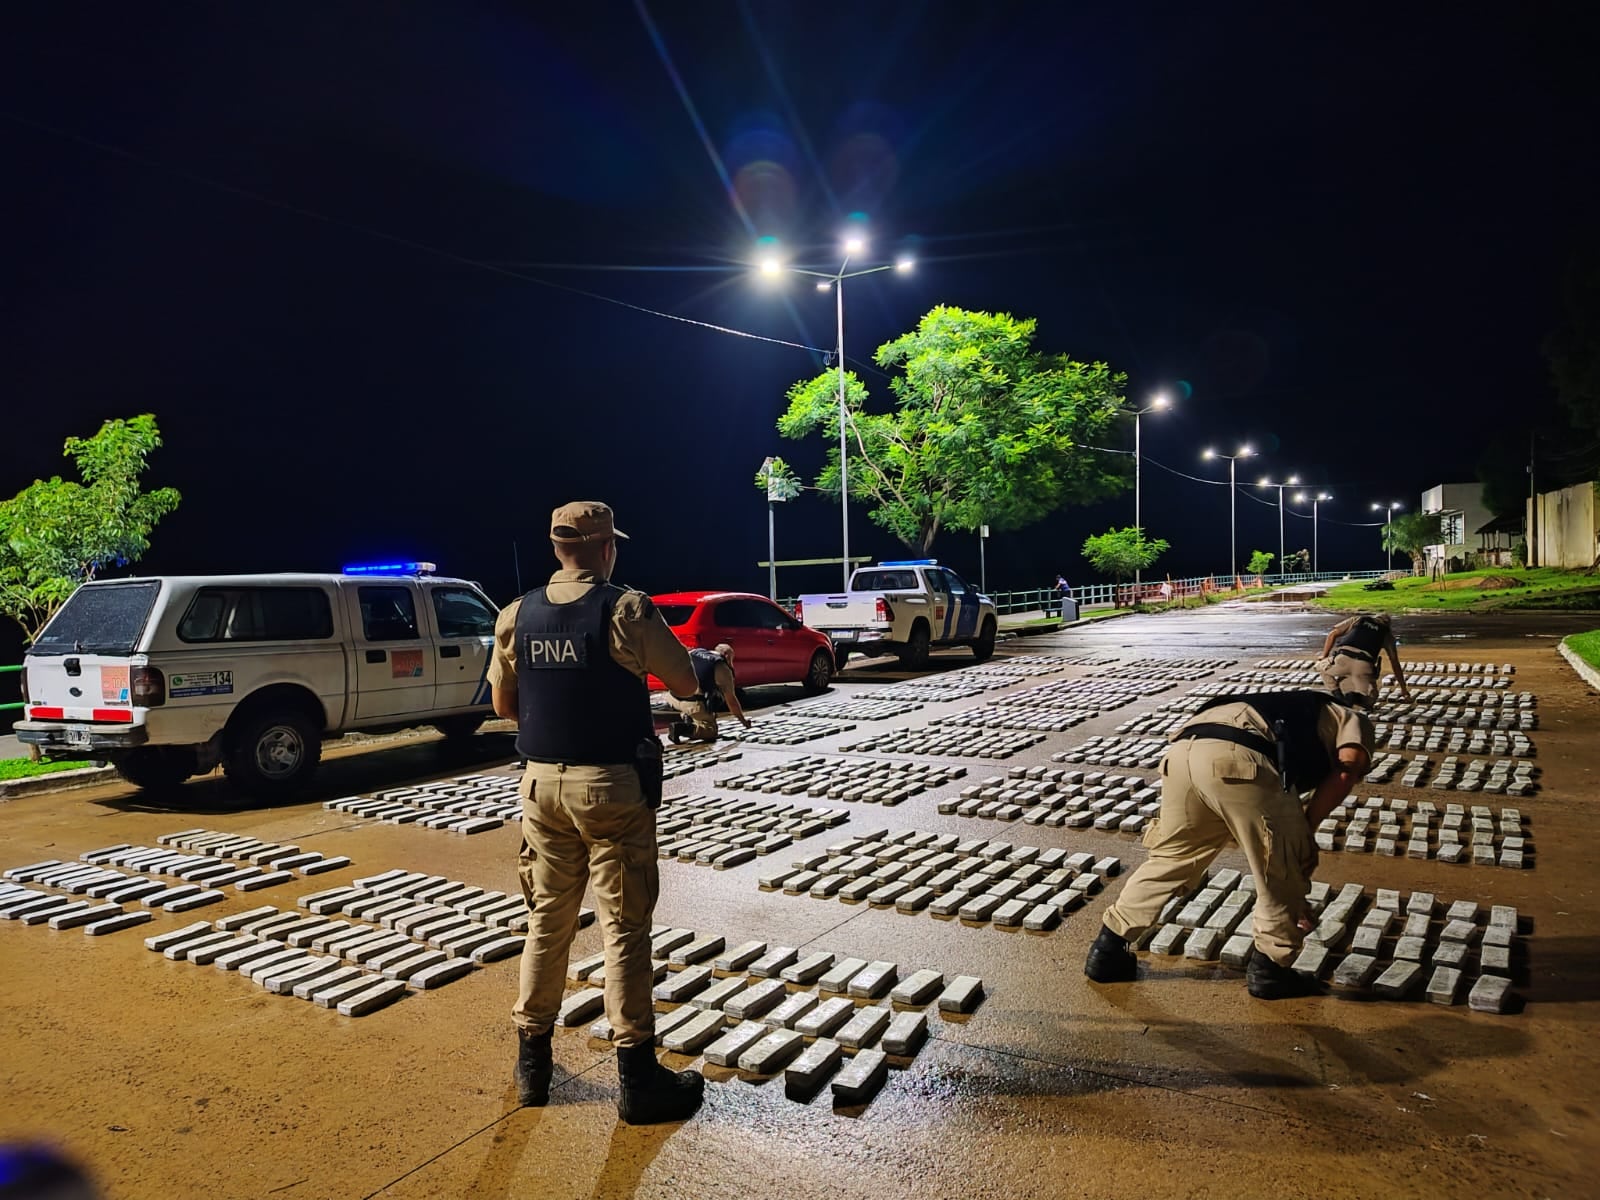 Prefectura secuestró más de 1300 panes de marihuana en un control fronterizo en Corrientes